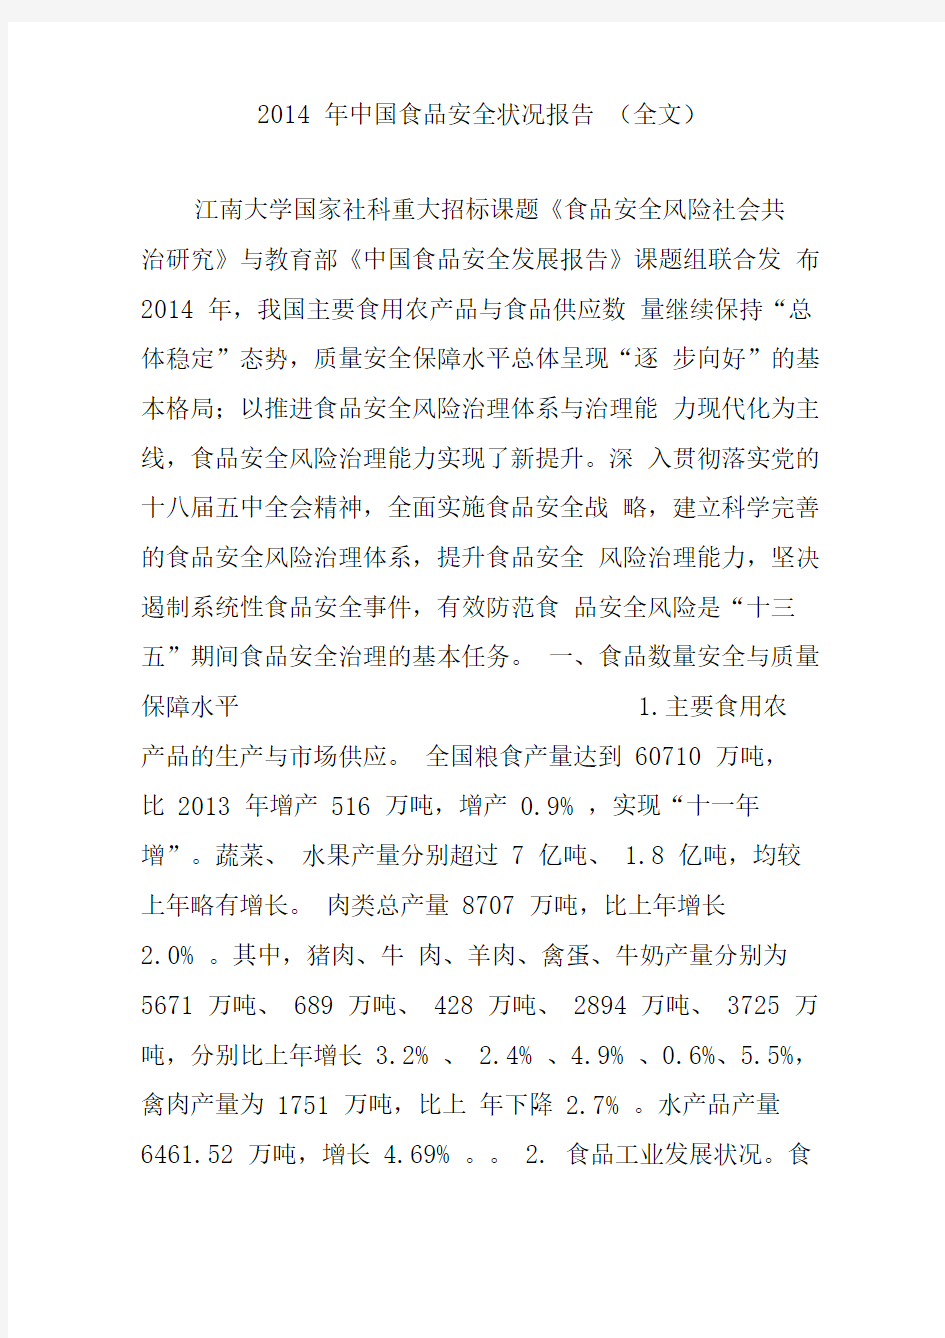 2014年中国食品安全状况报告(全文)